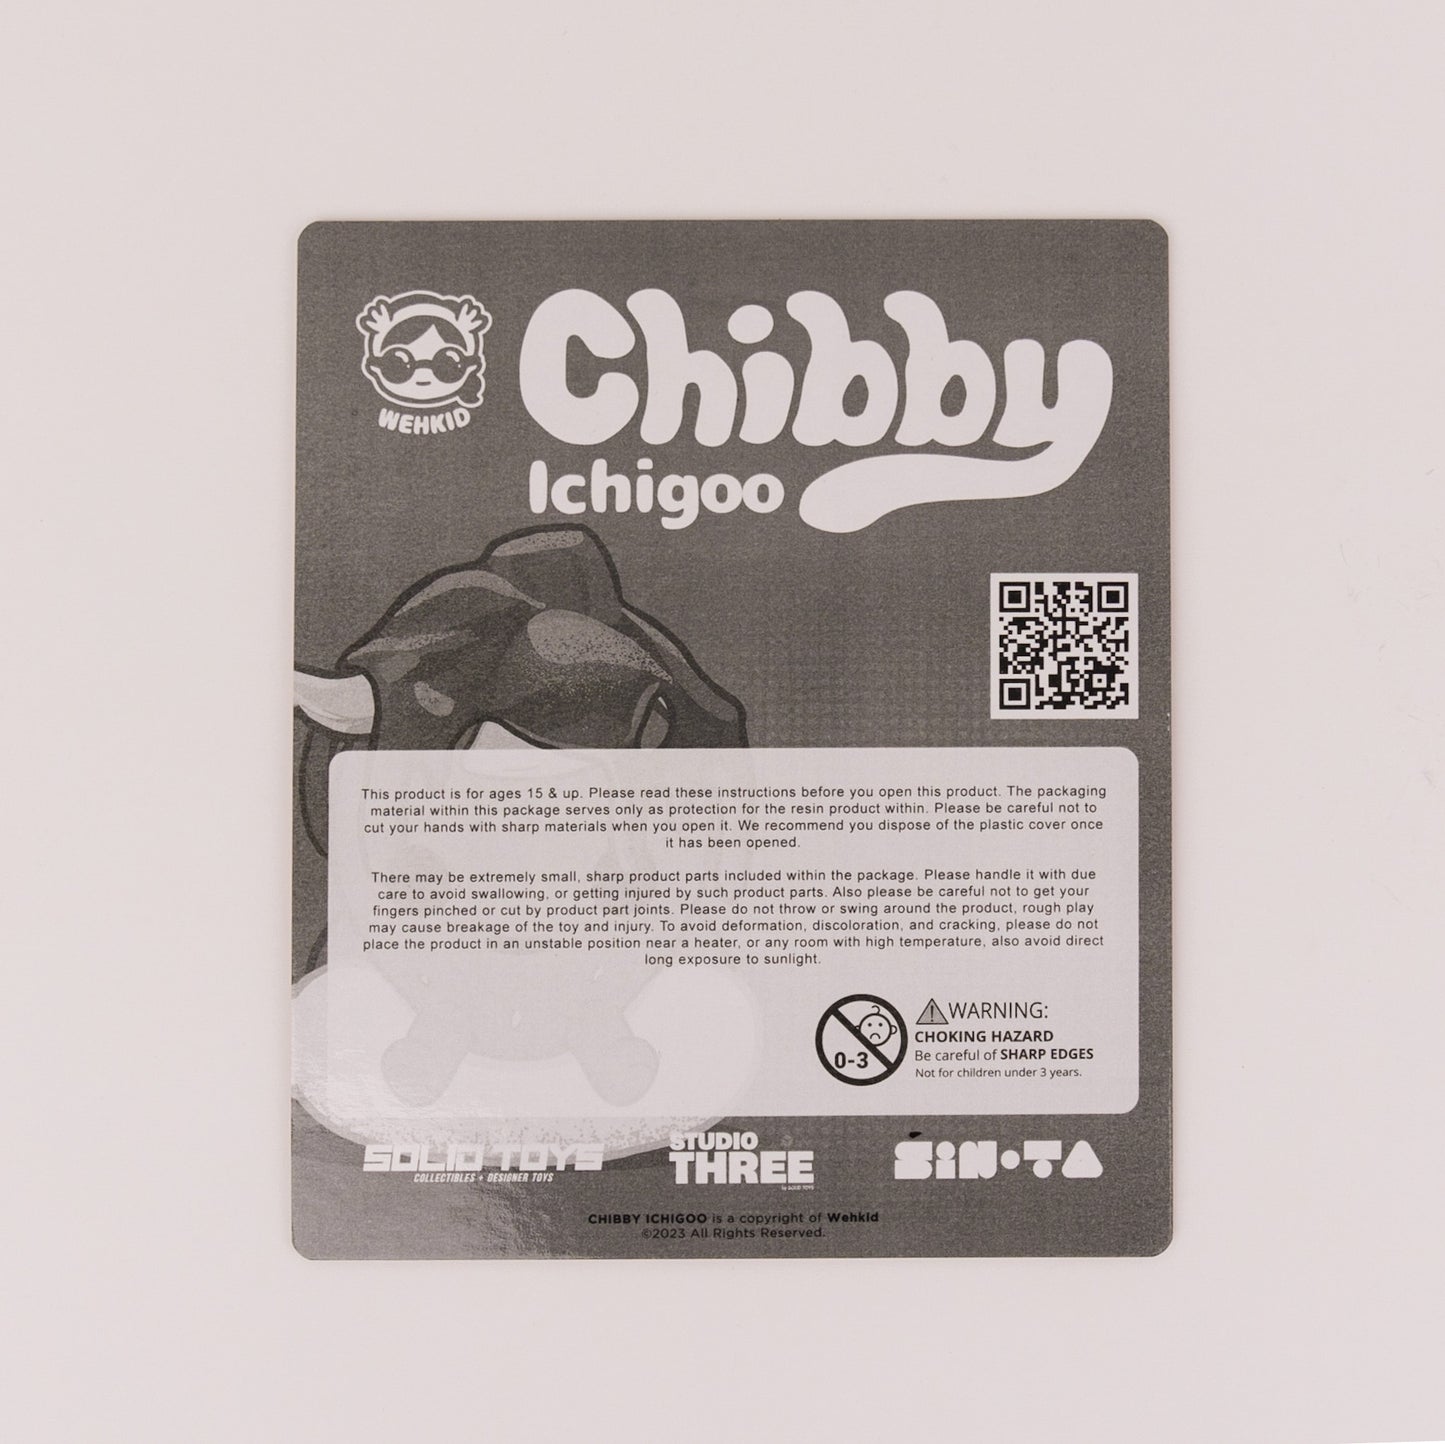 Chibby Ichigoo